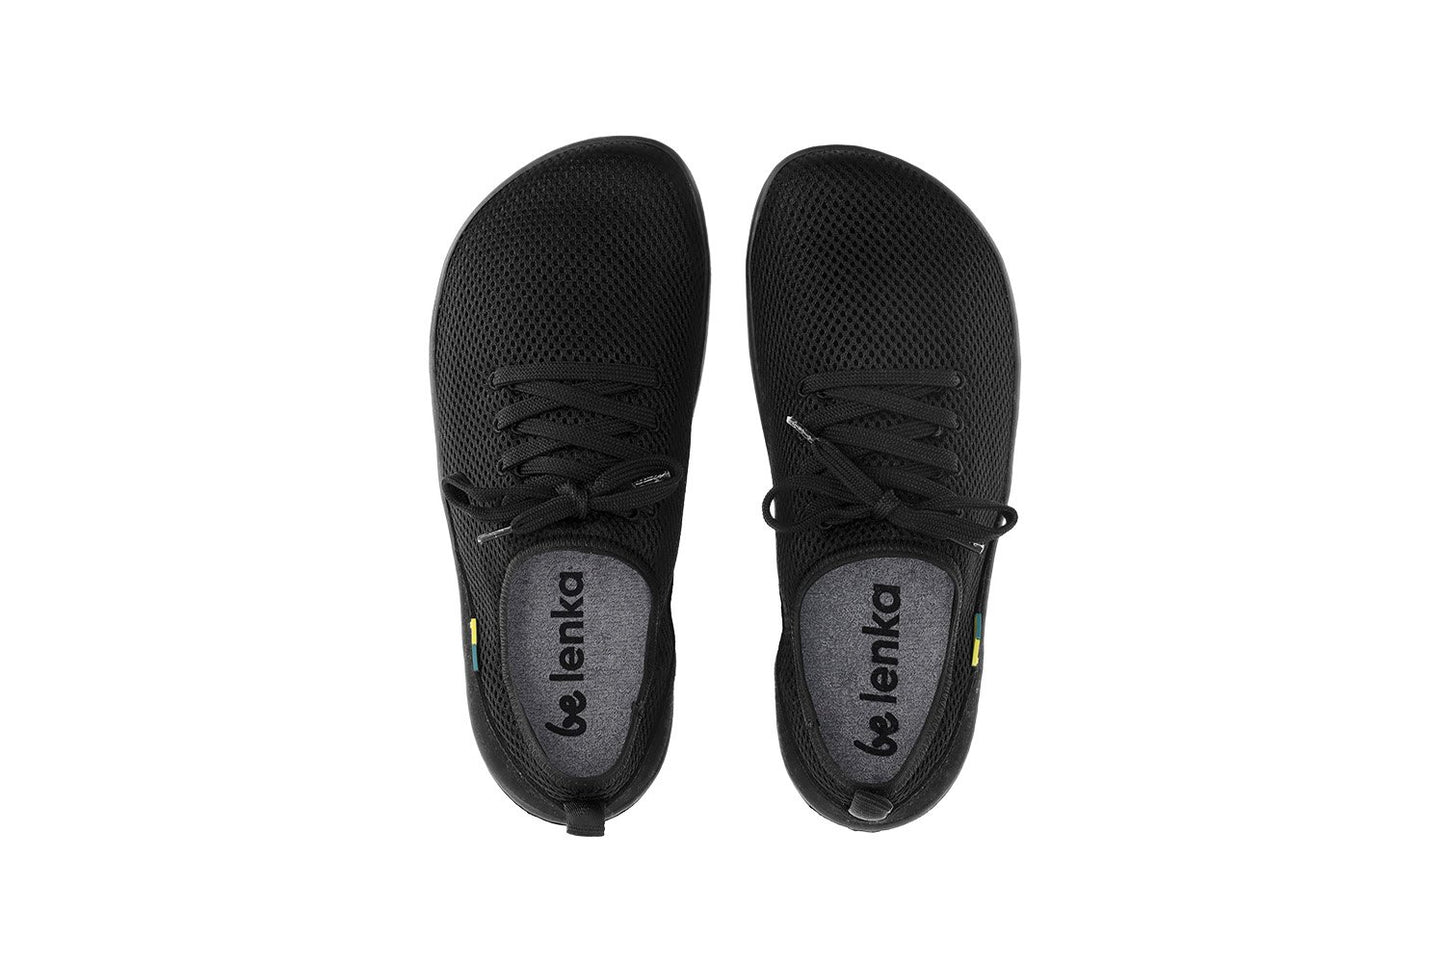 Be Lenka Dash Barefoot Sneakers - All Black